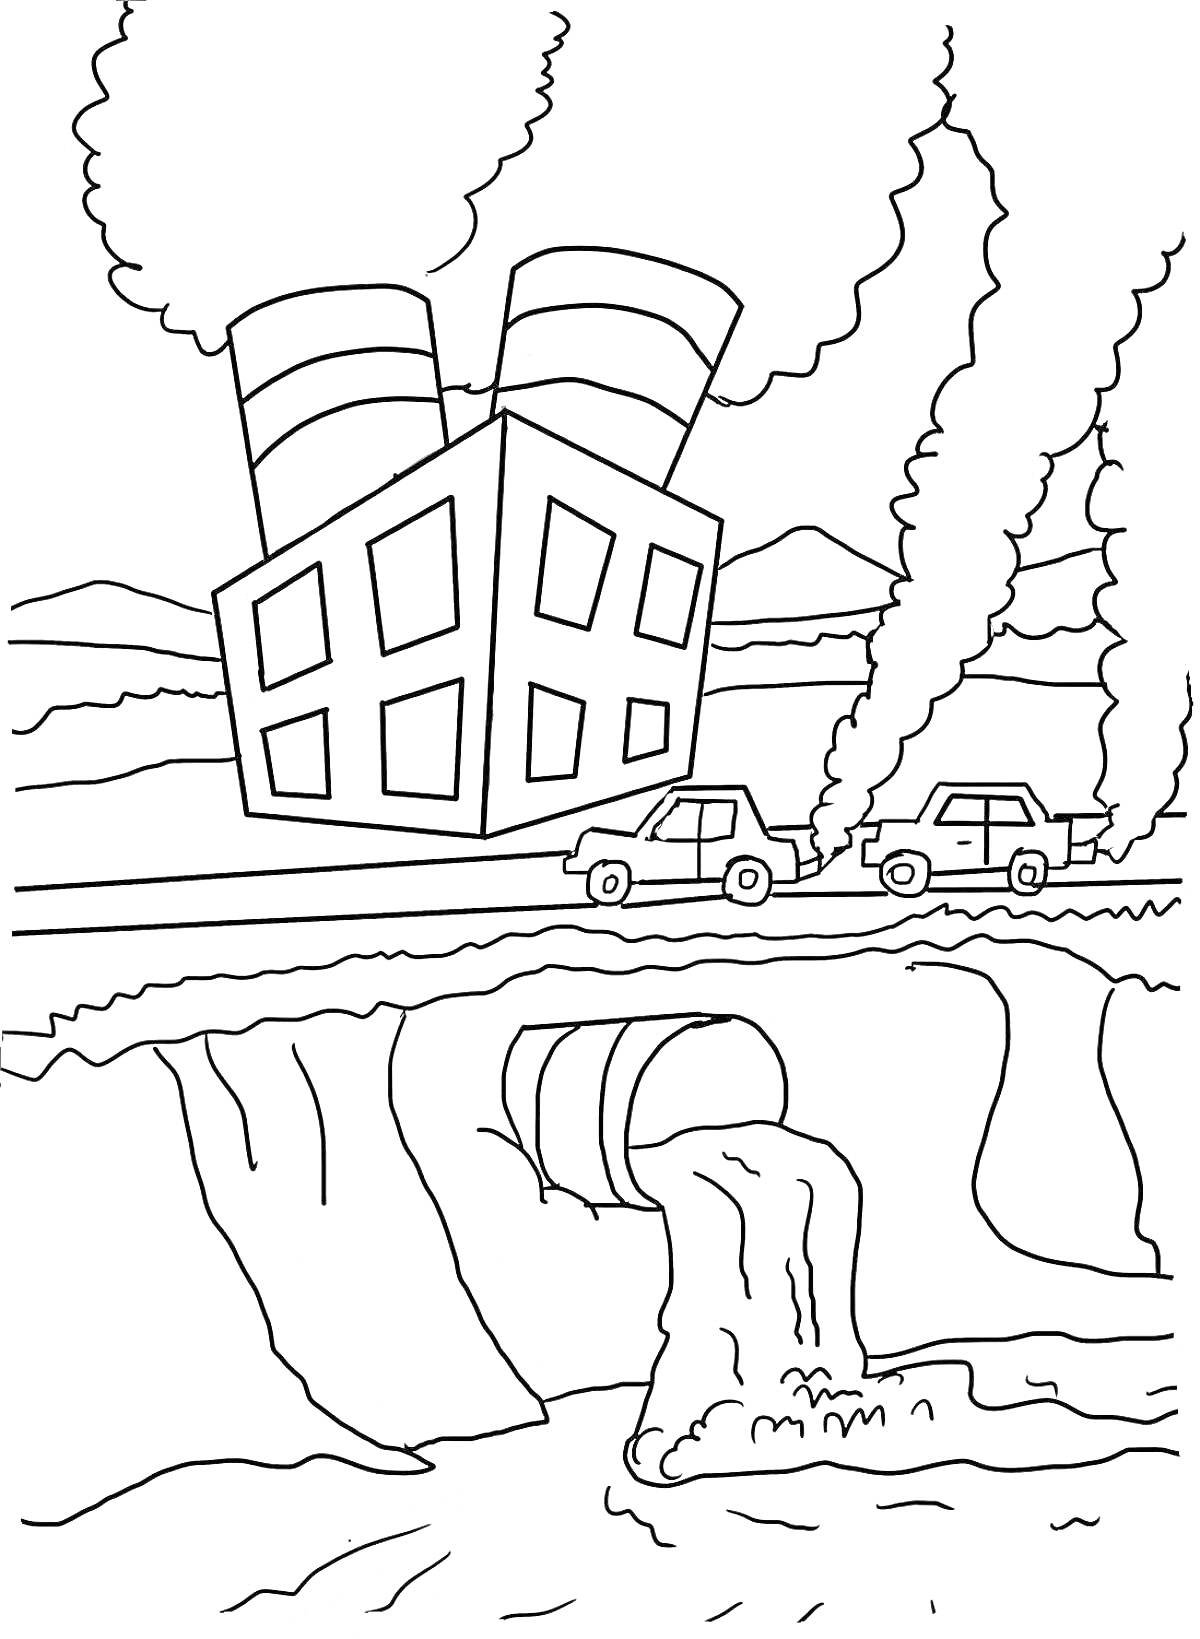 Завод с трубами, дым, автомобили, выбросы в реку